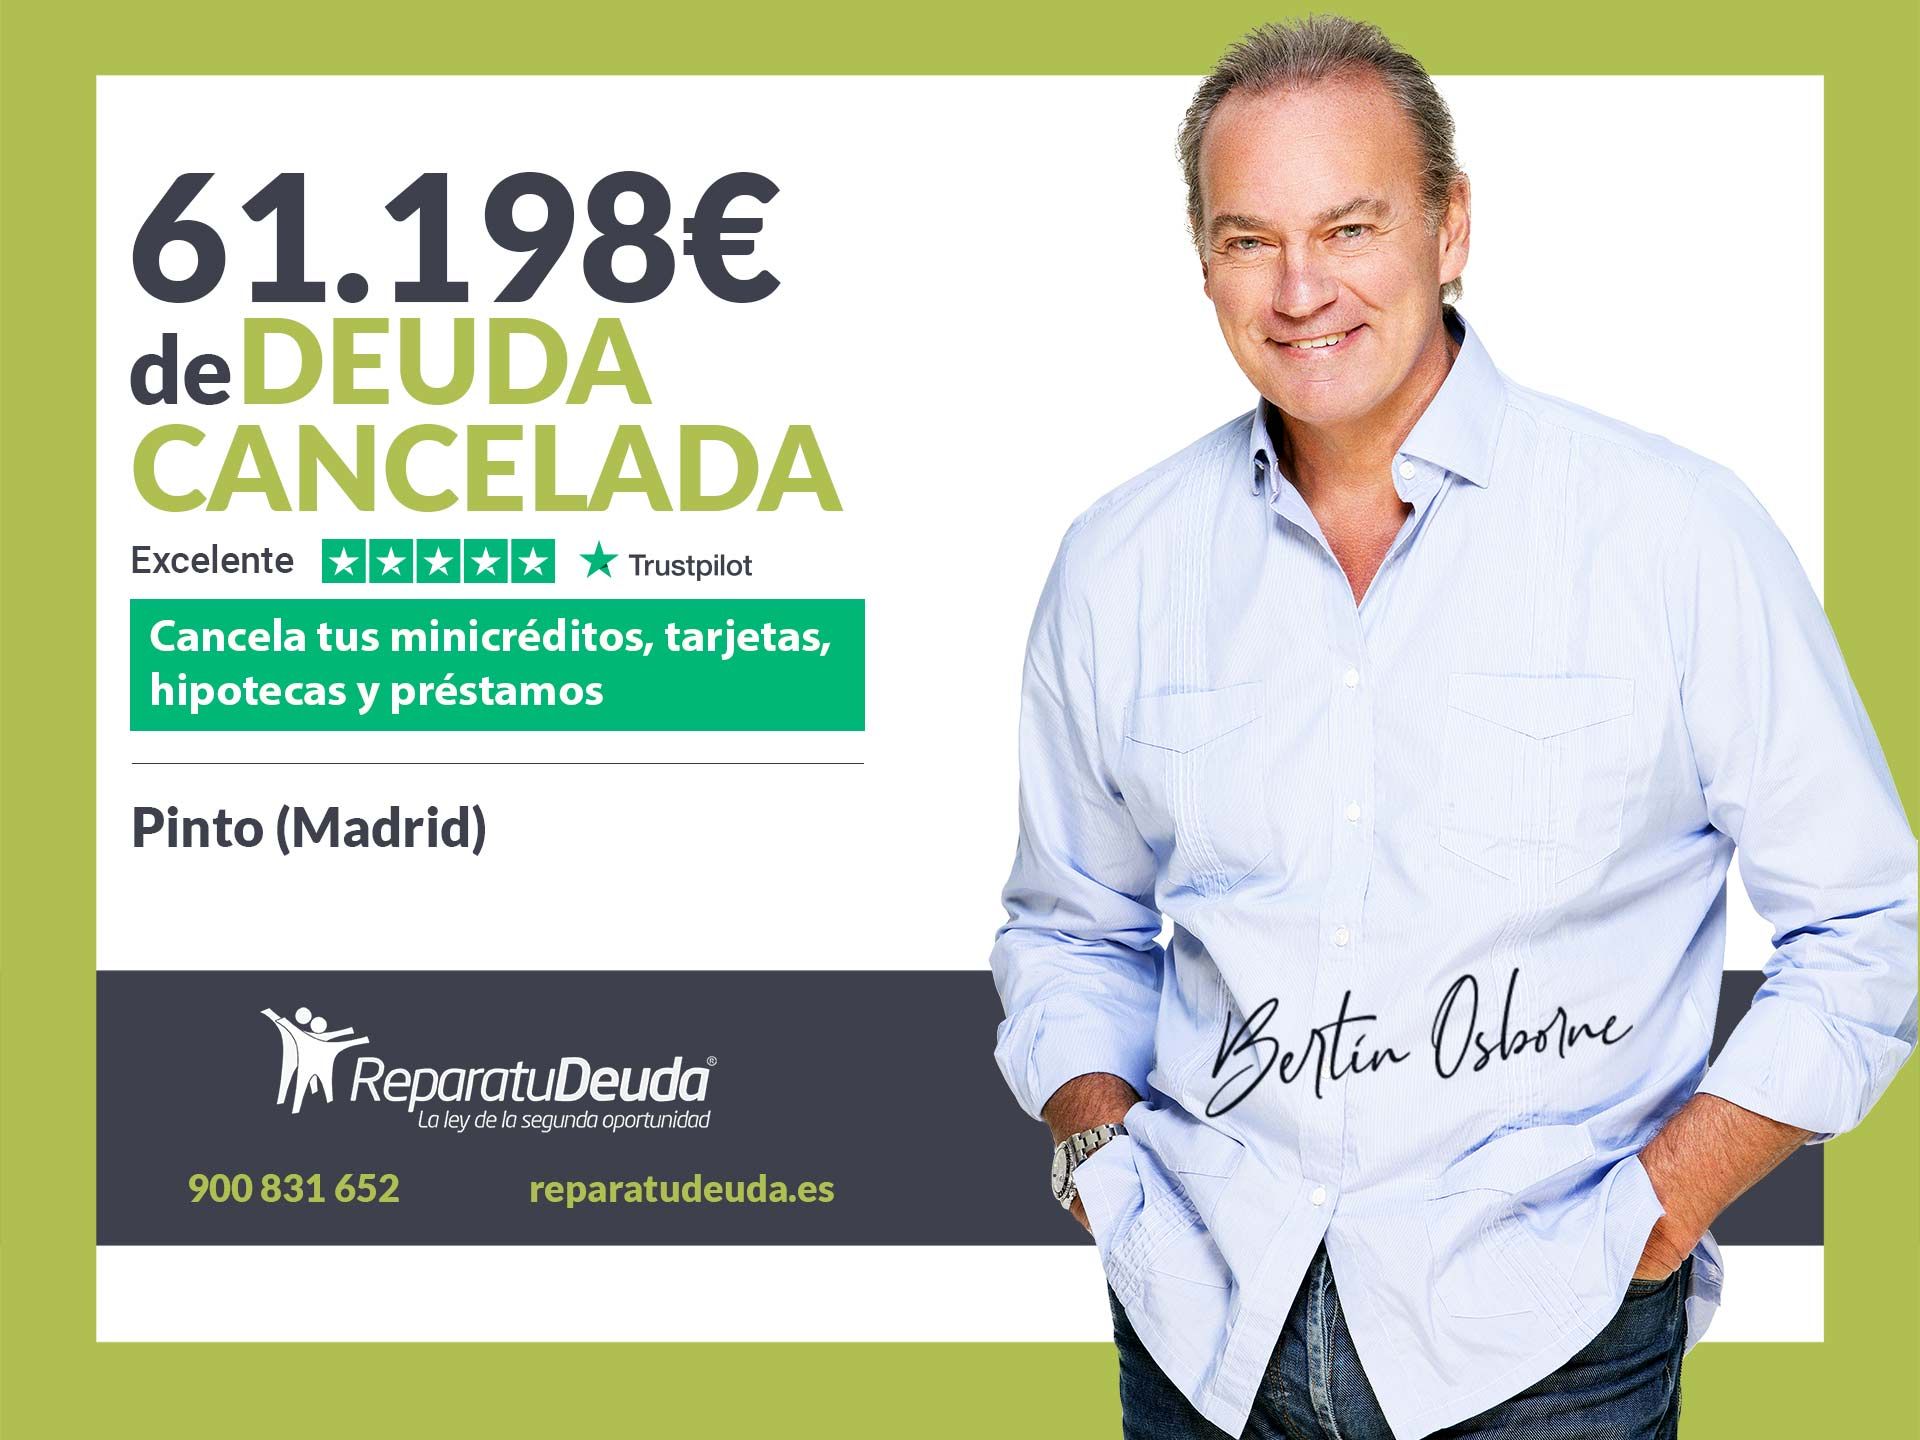 Repara tu Deuda Abogados cancela 61.198? en Pinto (Madrid) con la Ley de Segunda Oportunidad